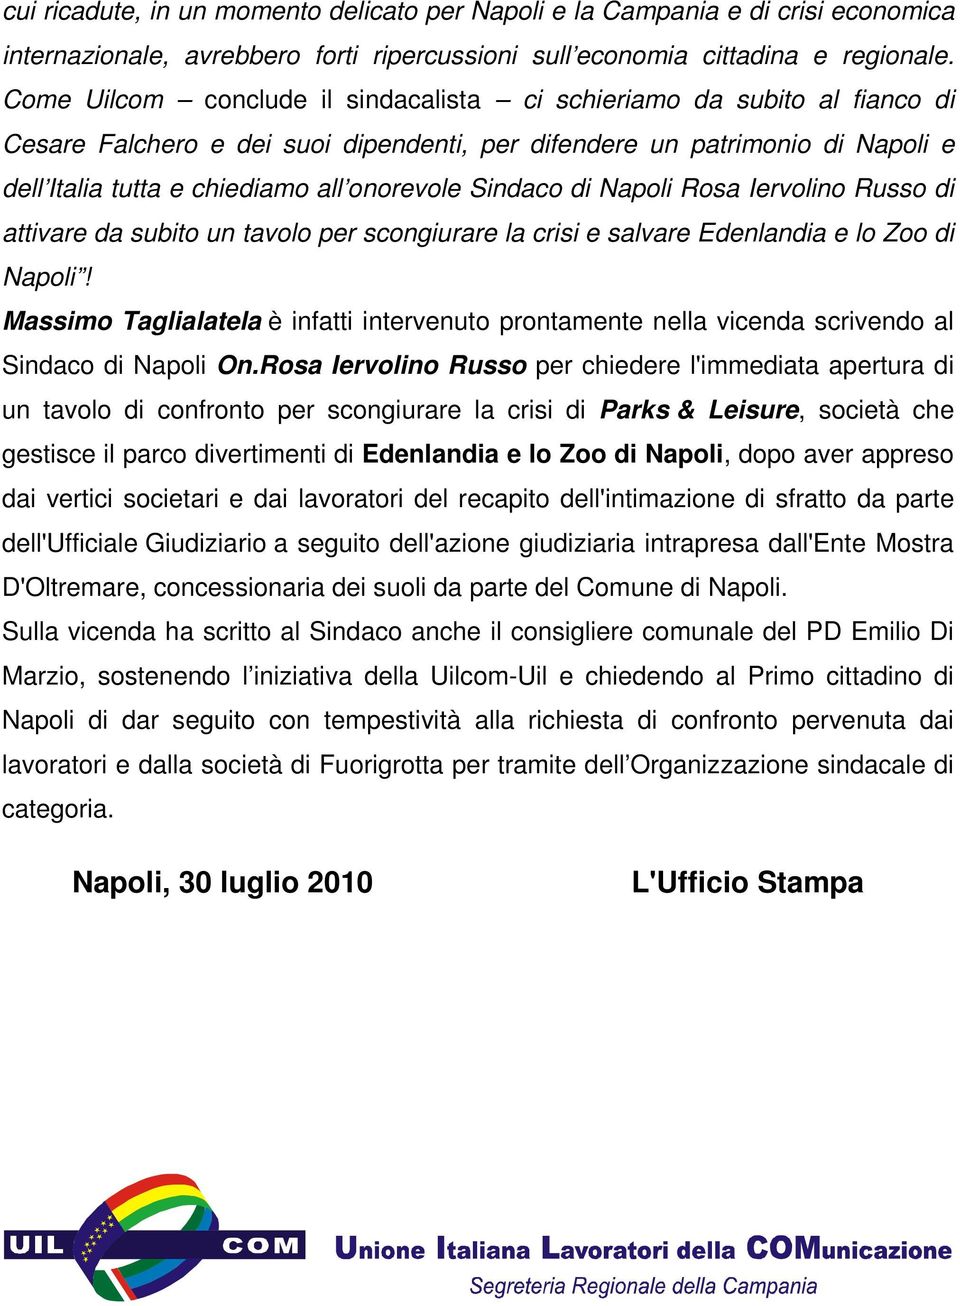 Sindaco di Napoli Rosa Iervolino Russo di attivare da subito un tavolo per scongiurare la crisi e salvare Edenlandia e lo Zoo di Napoli!